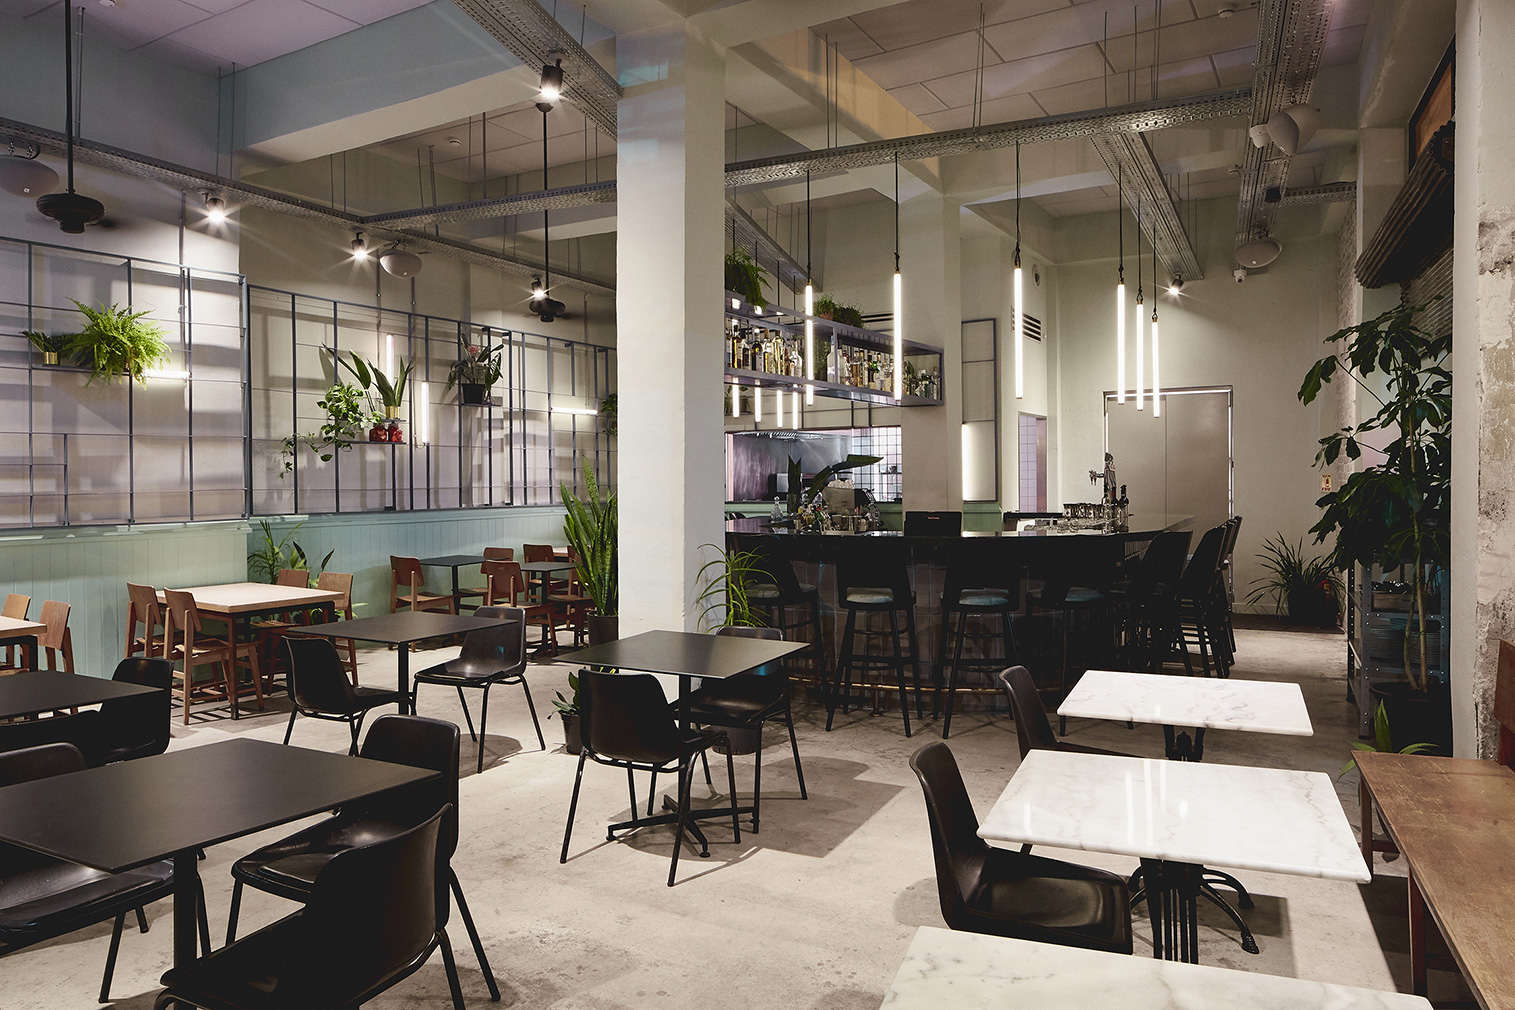 A Tel Aviv garage is reborn as Mansura restaurant